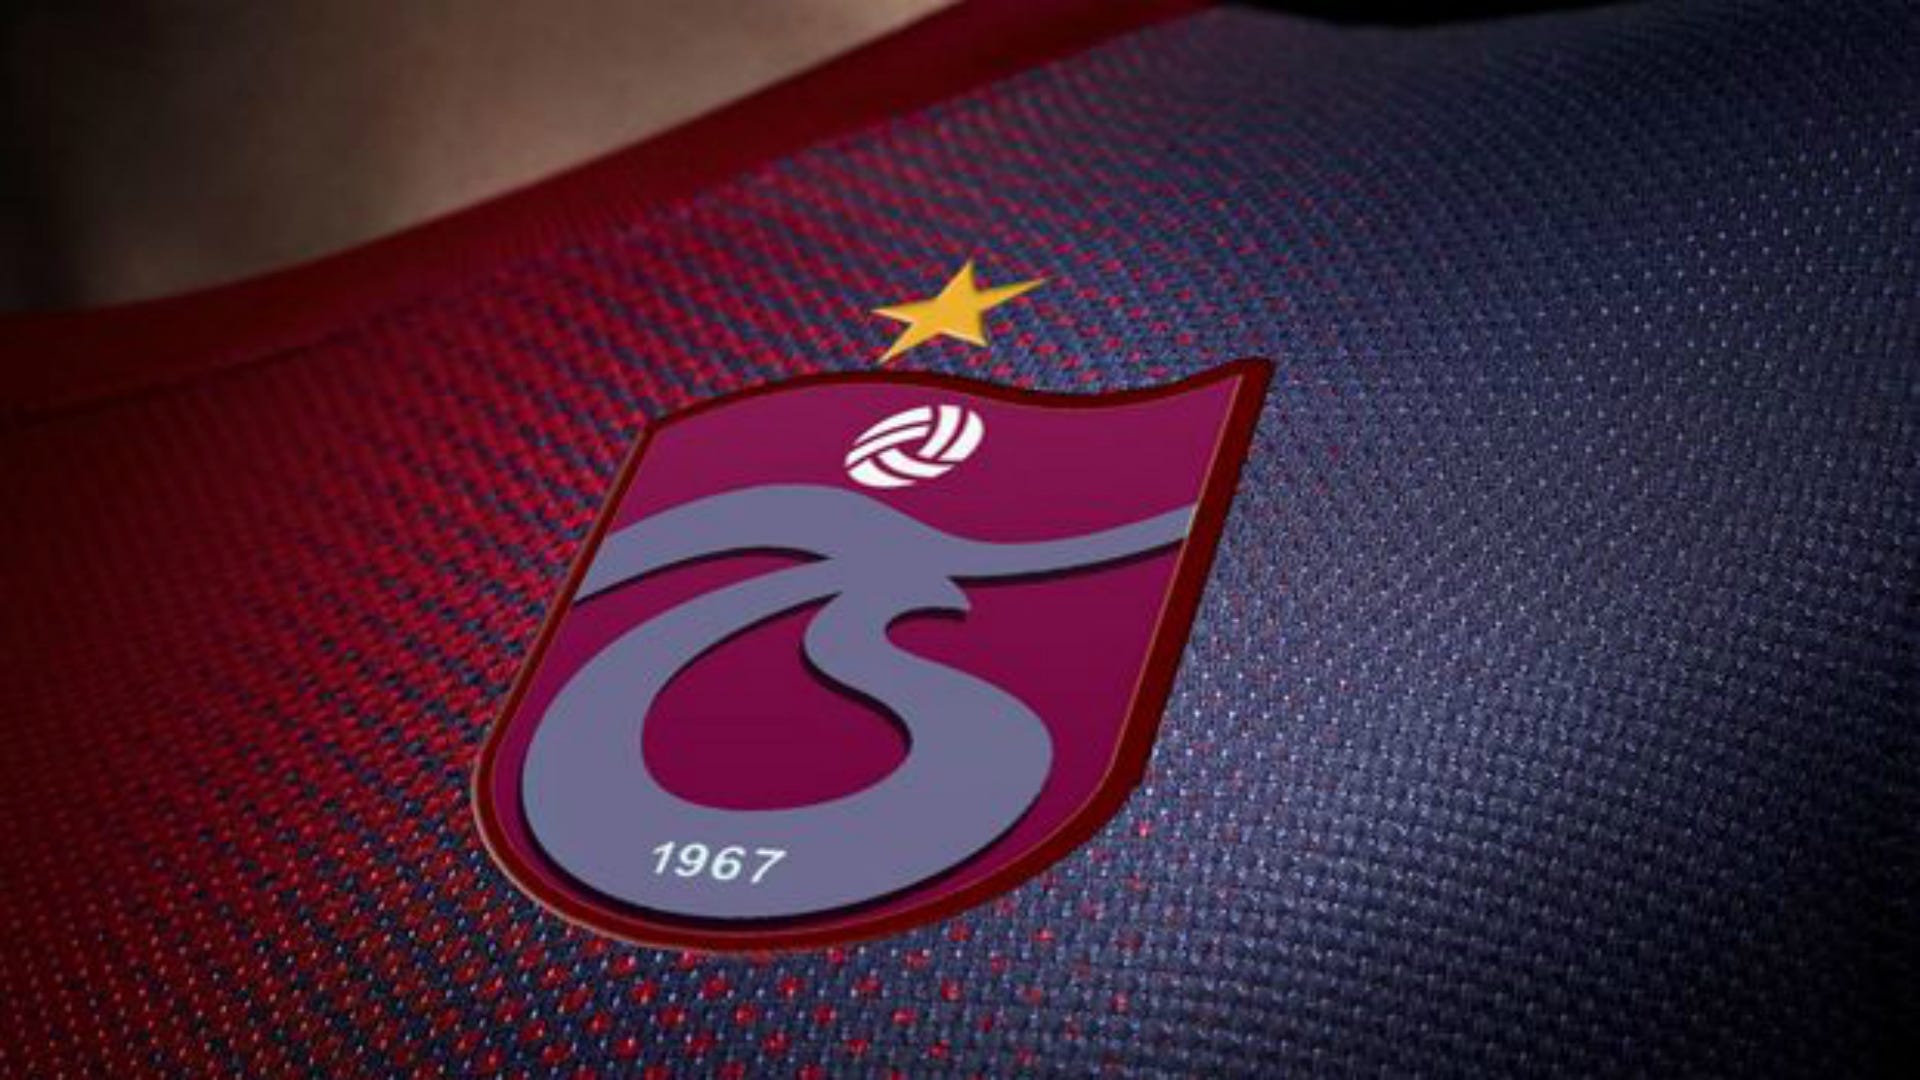 10 futbolcunun menajeri Trabzonspor'a dava açtı